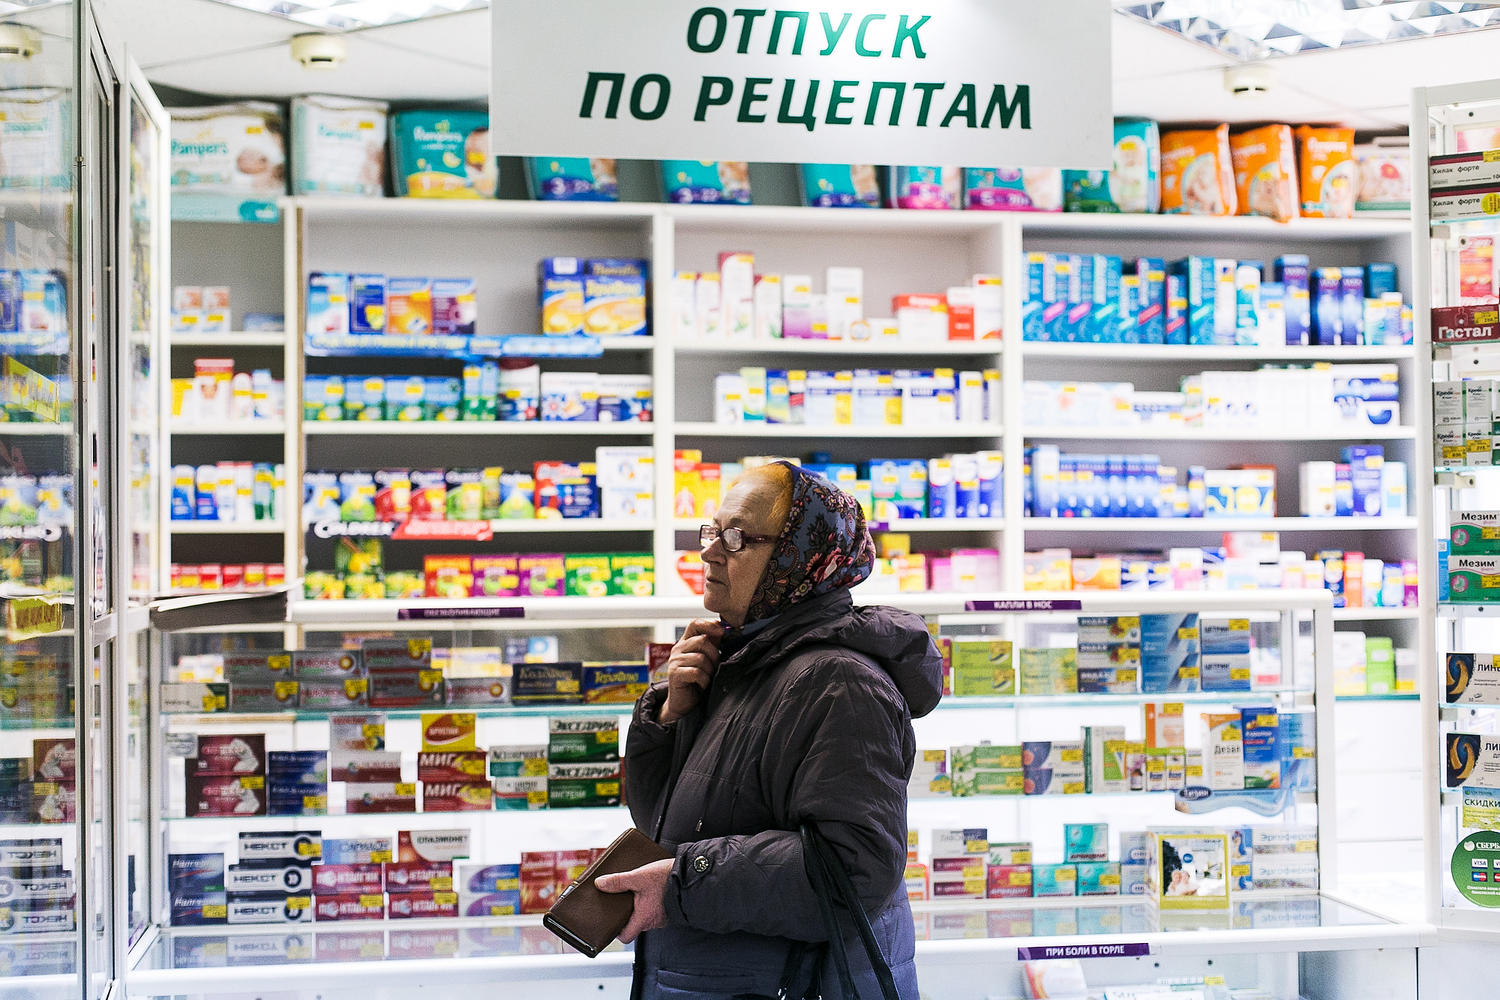 Ригла Купить Лекарство В Москве